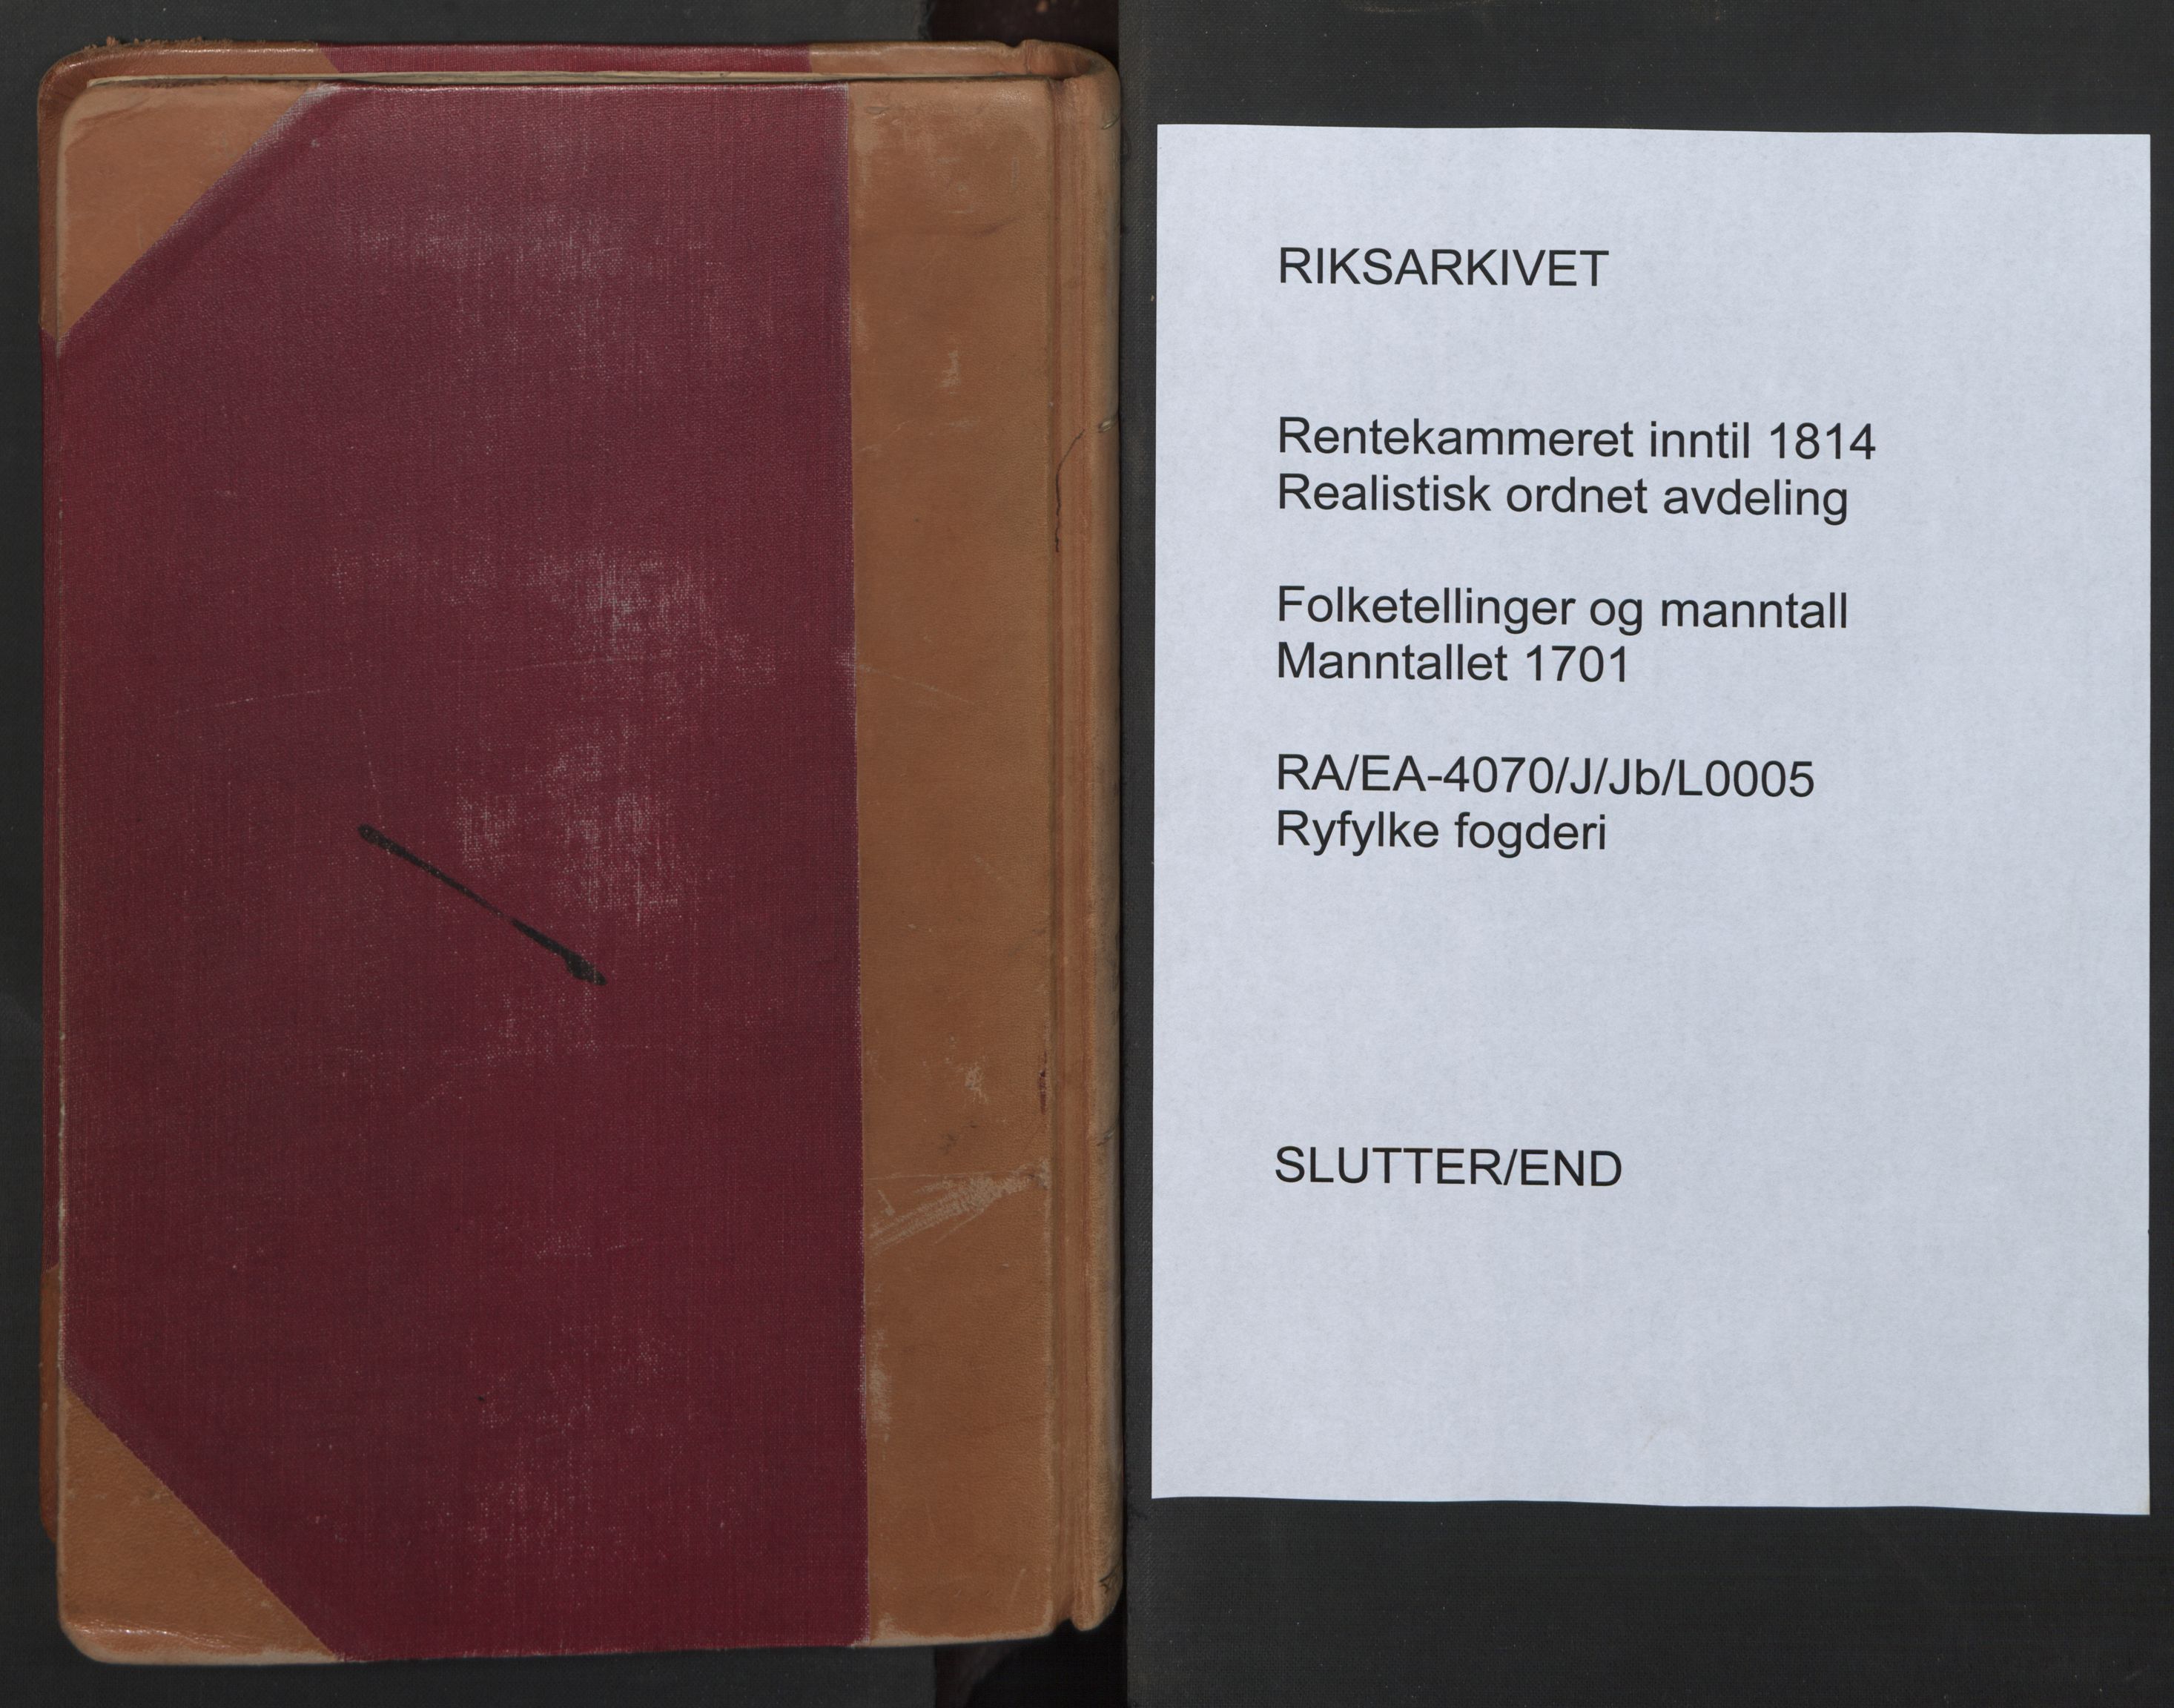 RA, Manntallet 1701, nr. 5: Ryfylke fogderi, 1701